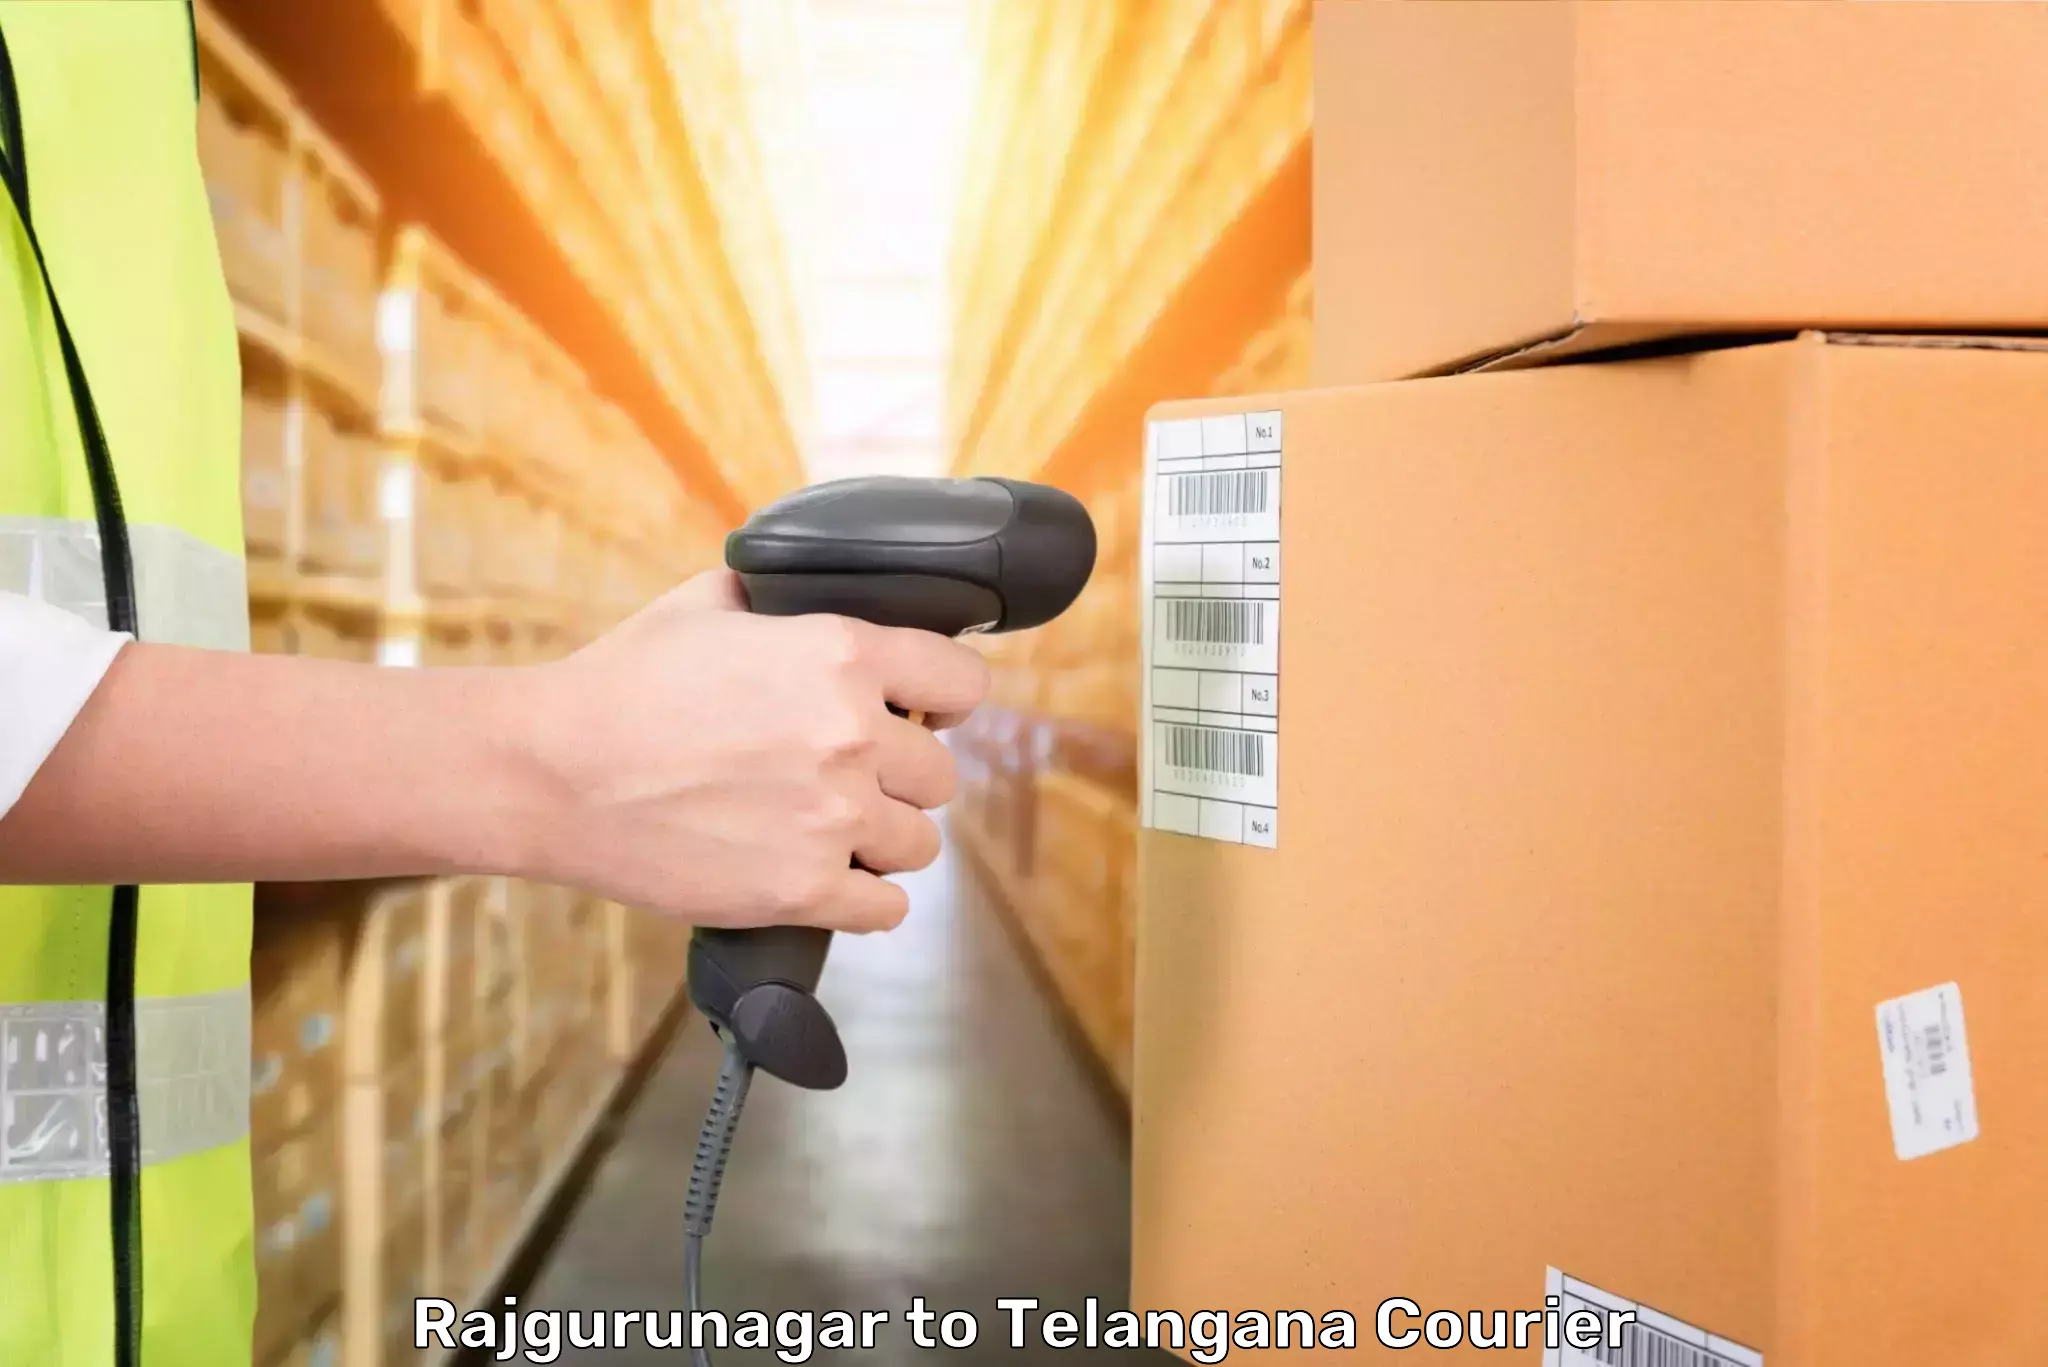 Baggage transport innovation Rajgurunagar to Telangana